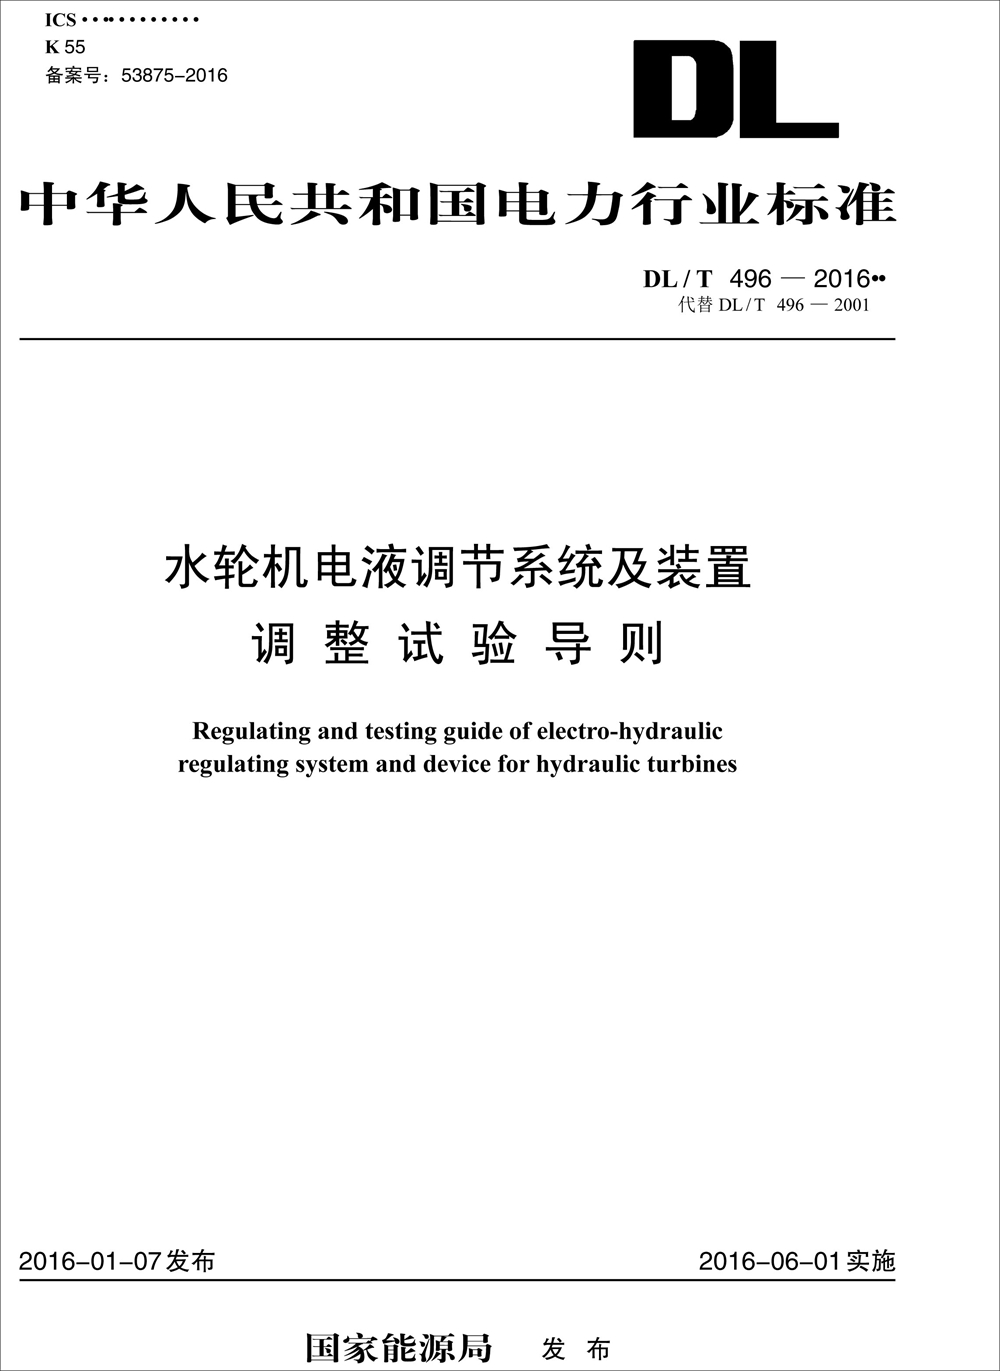 中华人民共和国电力行业标准（DL/T 496-2016）：水轮机电液调节系统及装置调整试验导则 txt格式下载